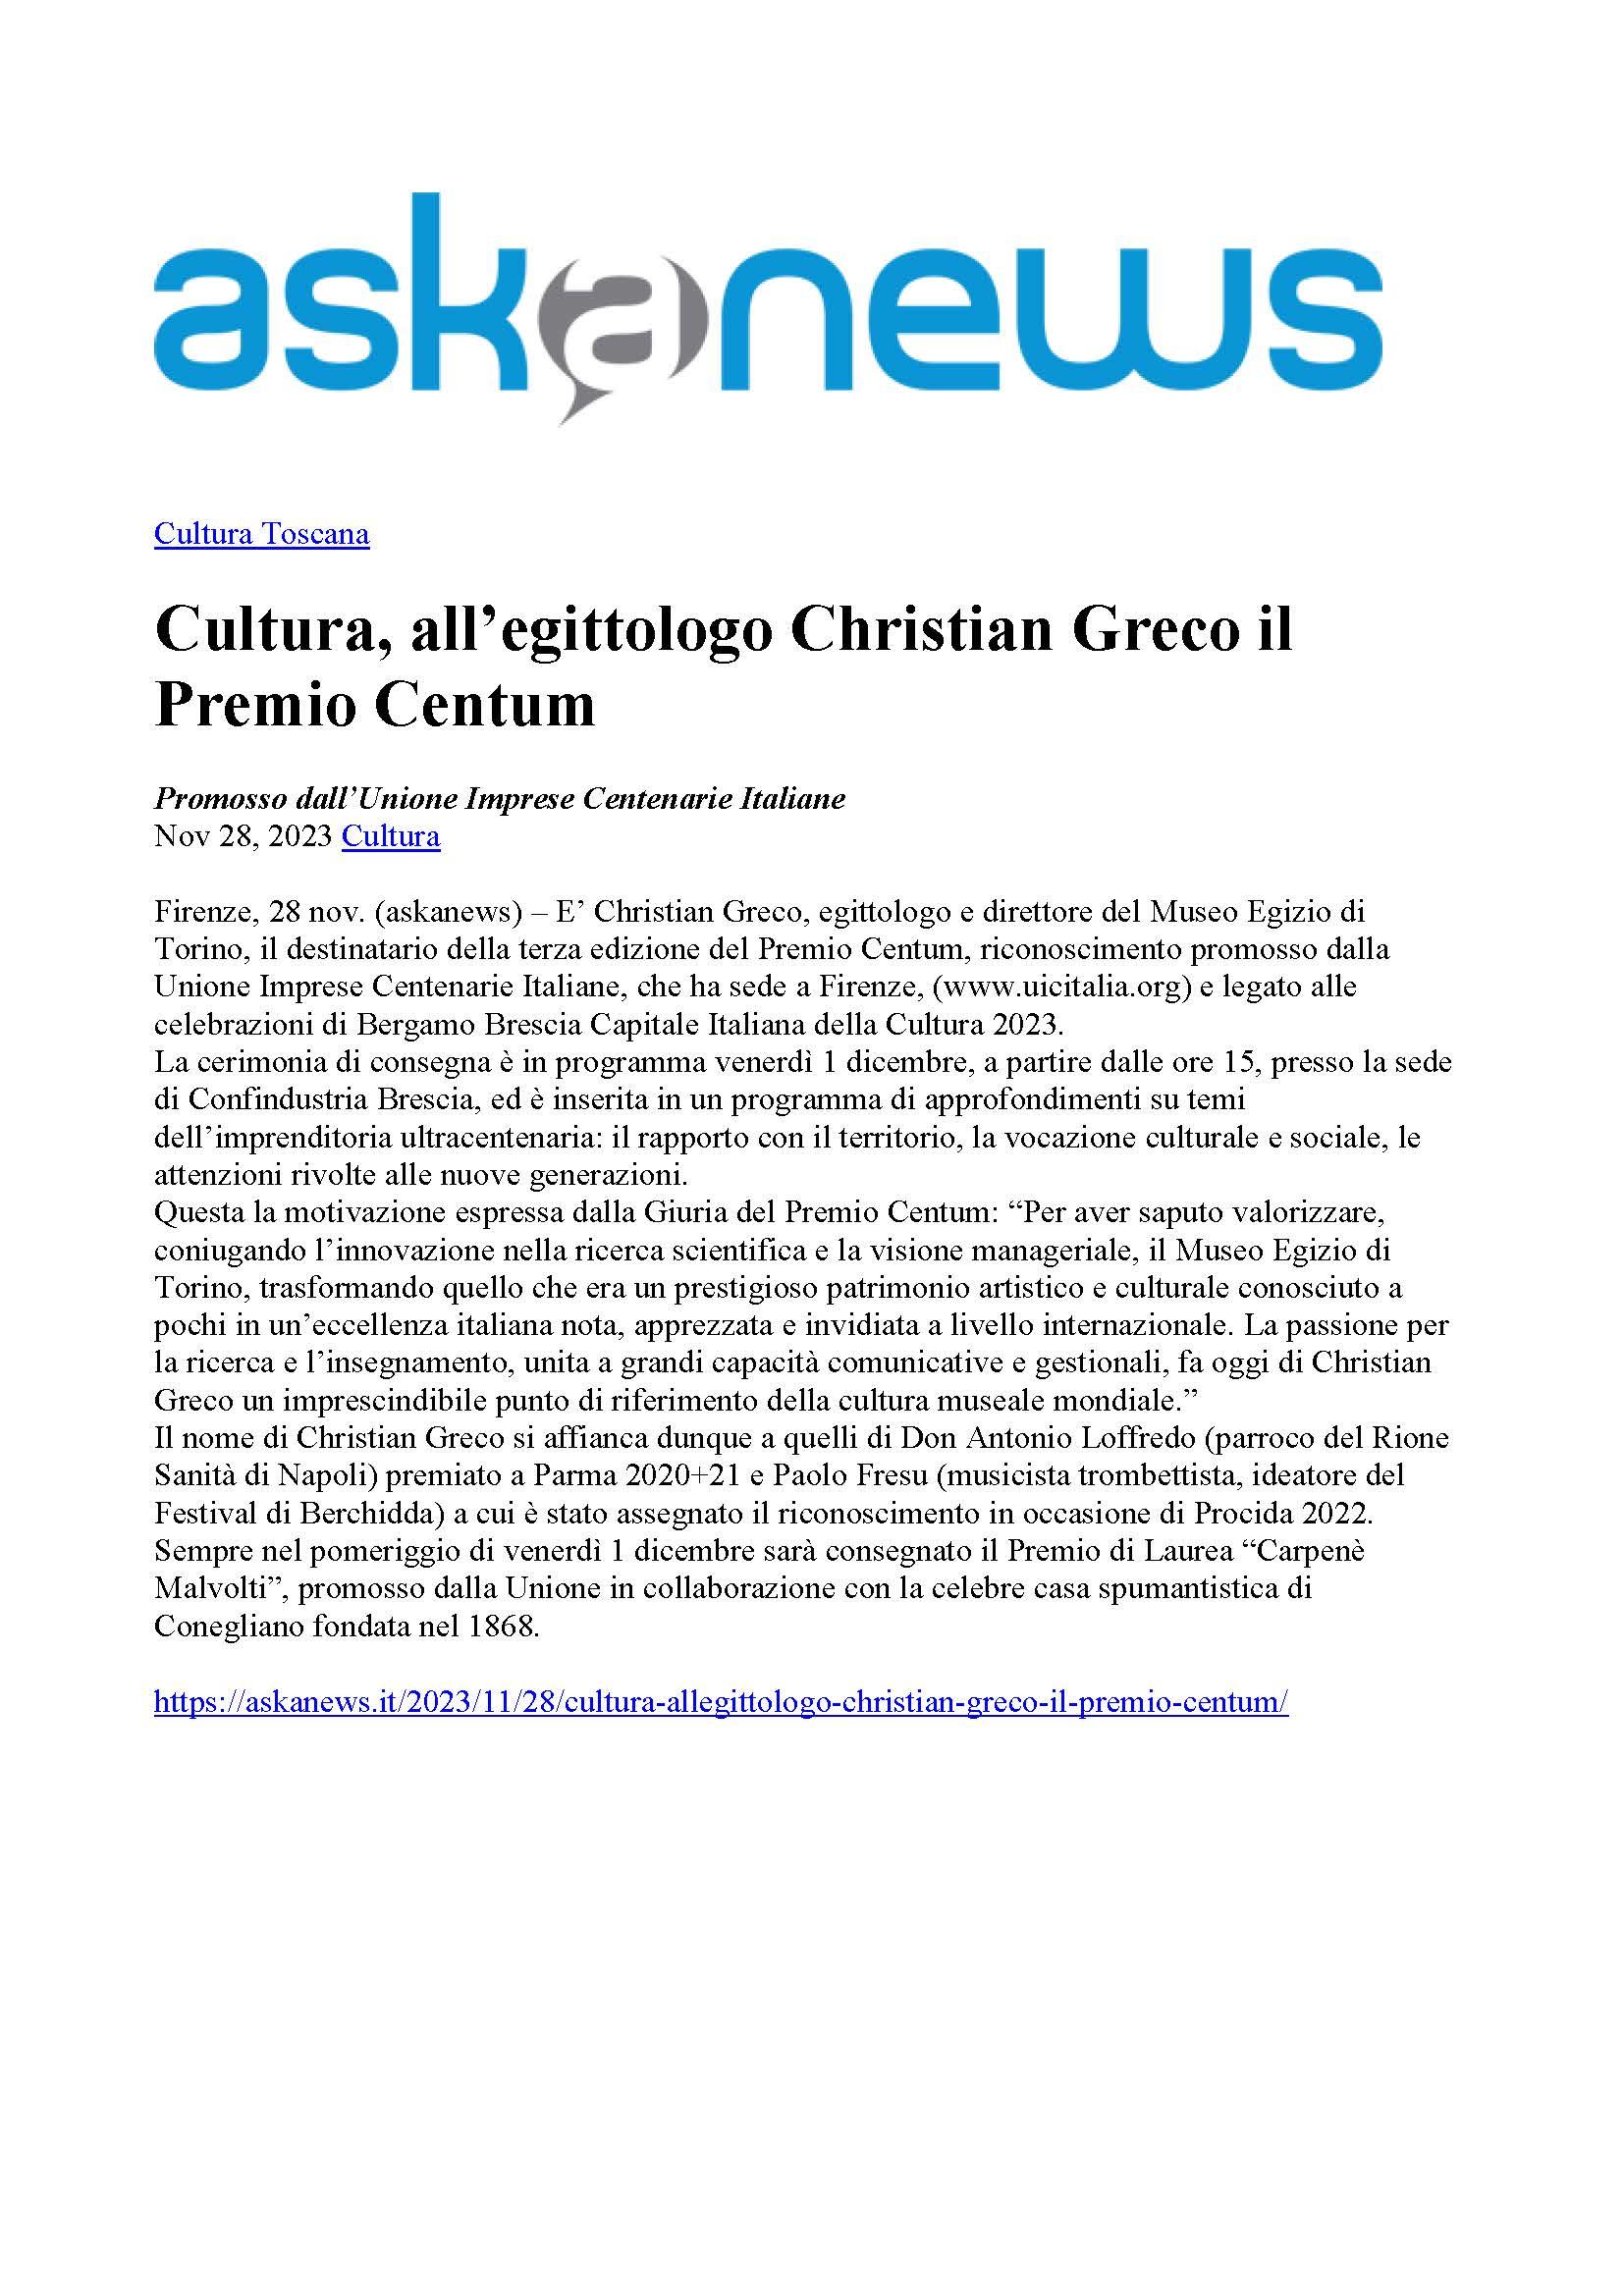 Askanews Cultura all egittologo Christian Greco il Premio Centum 28 novembre 2023